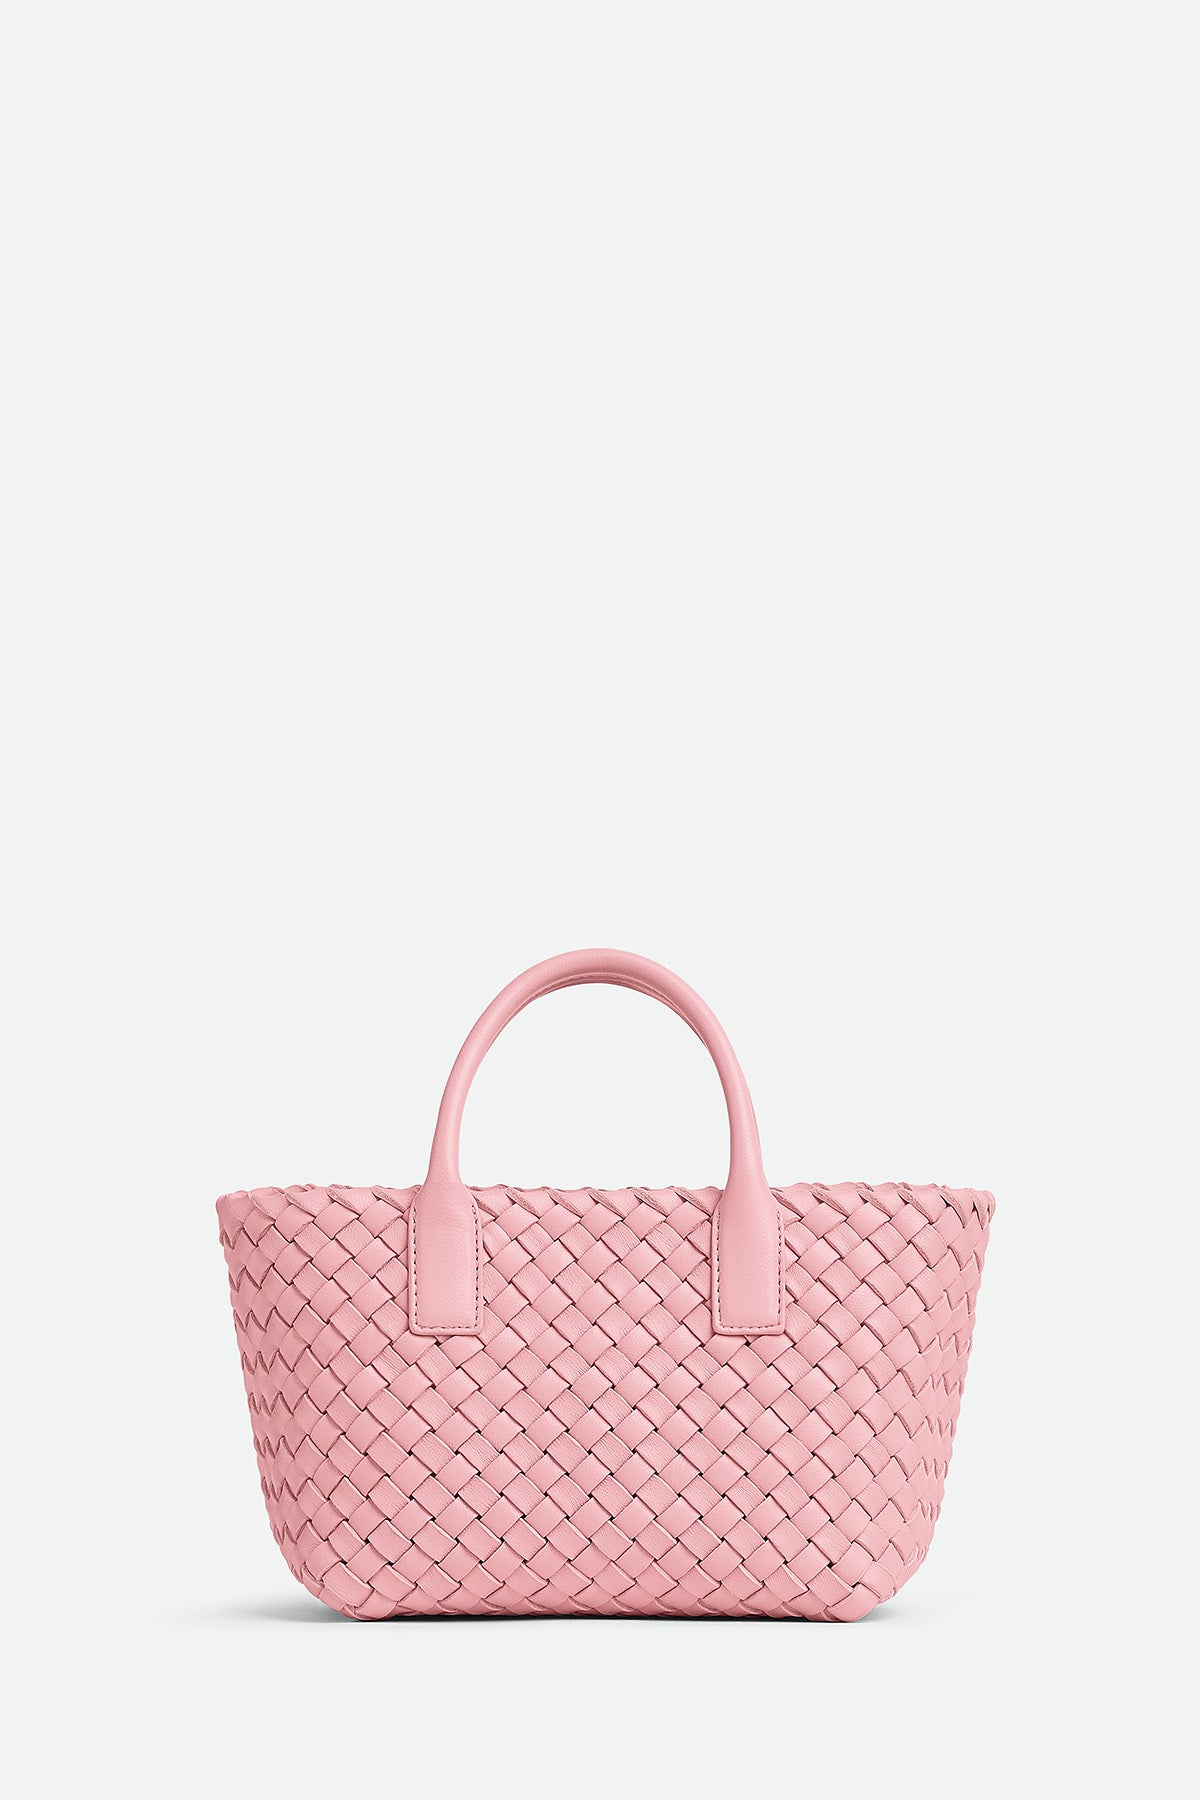 BOTTEGA VENETA braided bag pink - VALOIS VINTAGE PARIS